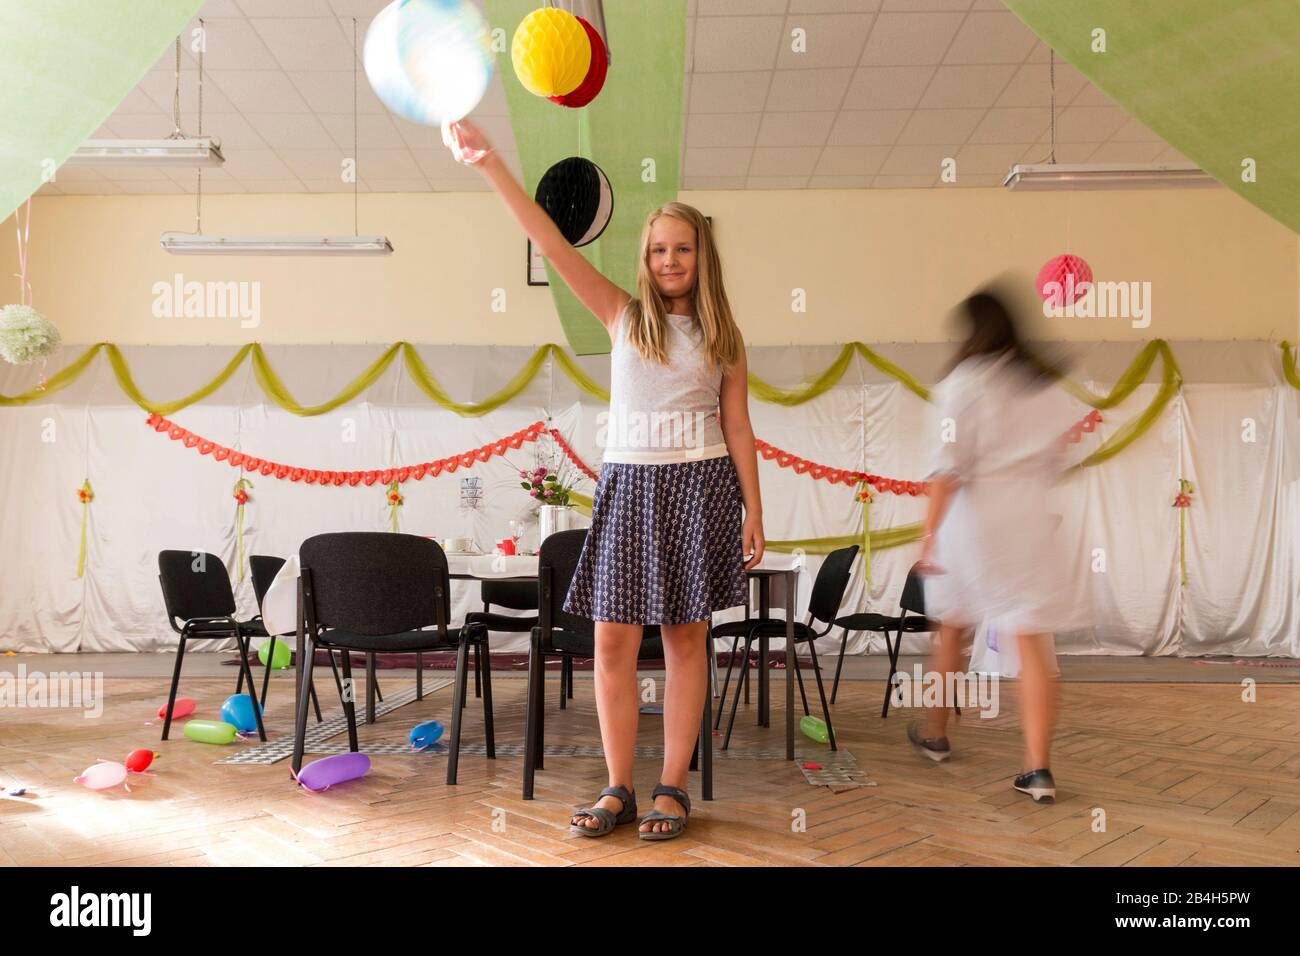 Una ragazza tiene un palloncino in aria mentre gli ospiti di altre parti si puliscono o sono già andati, Foto Stock